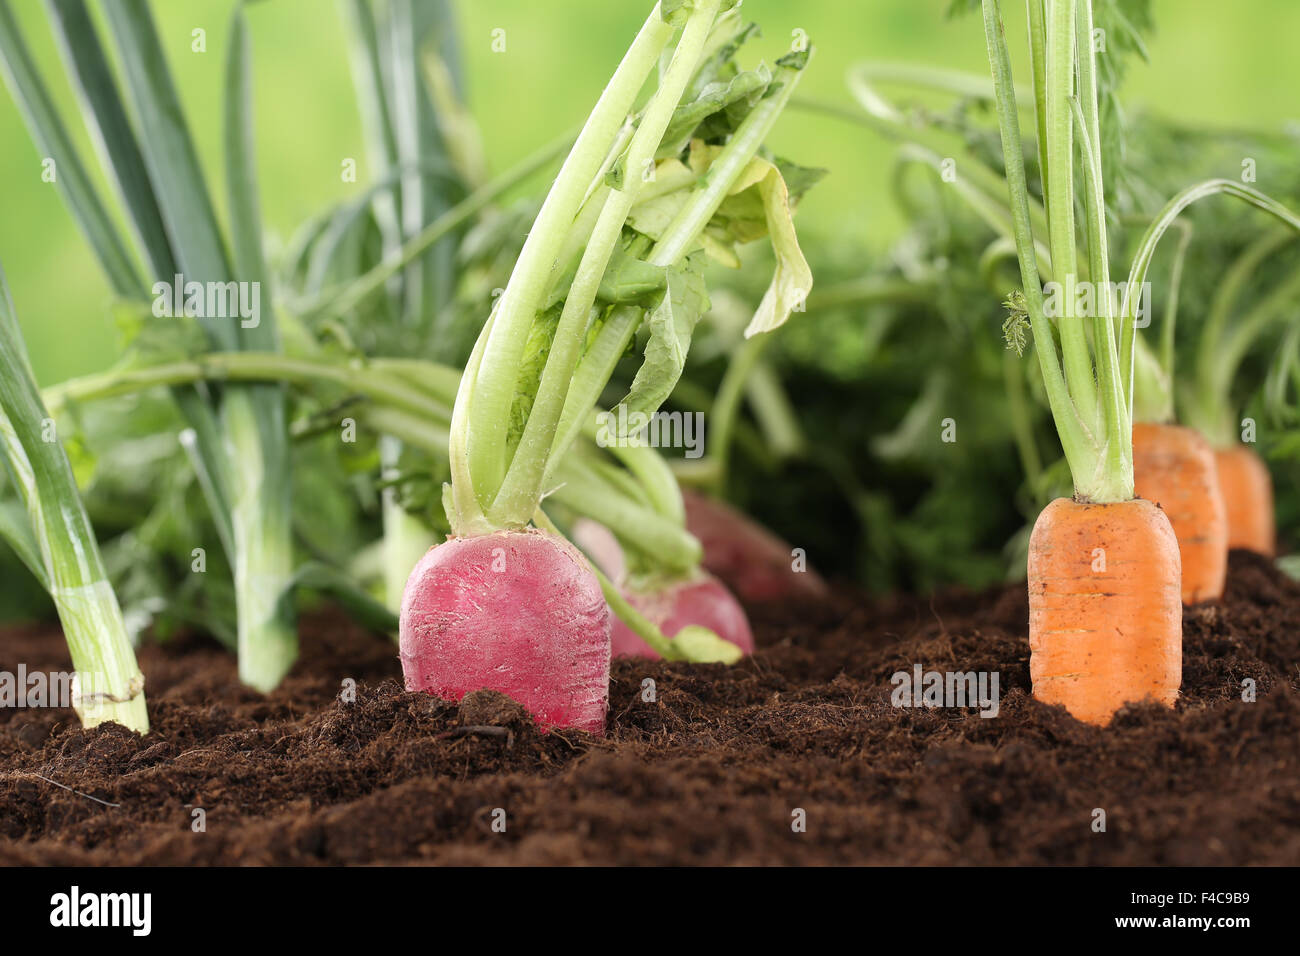 Gesunde Ernährung frisches Gemüse im Garten Stock Photo